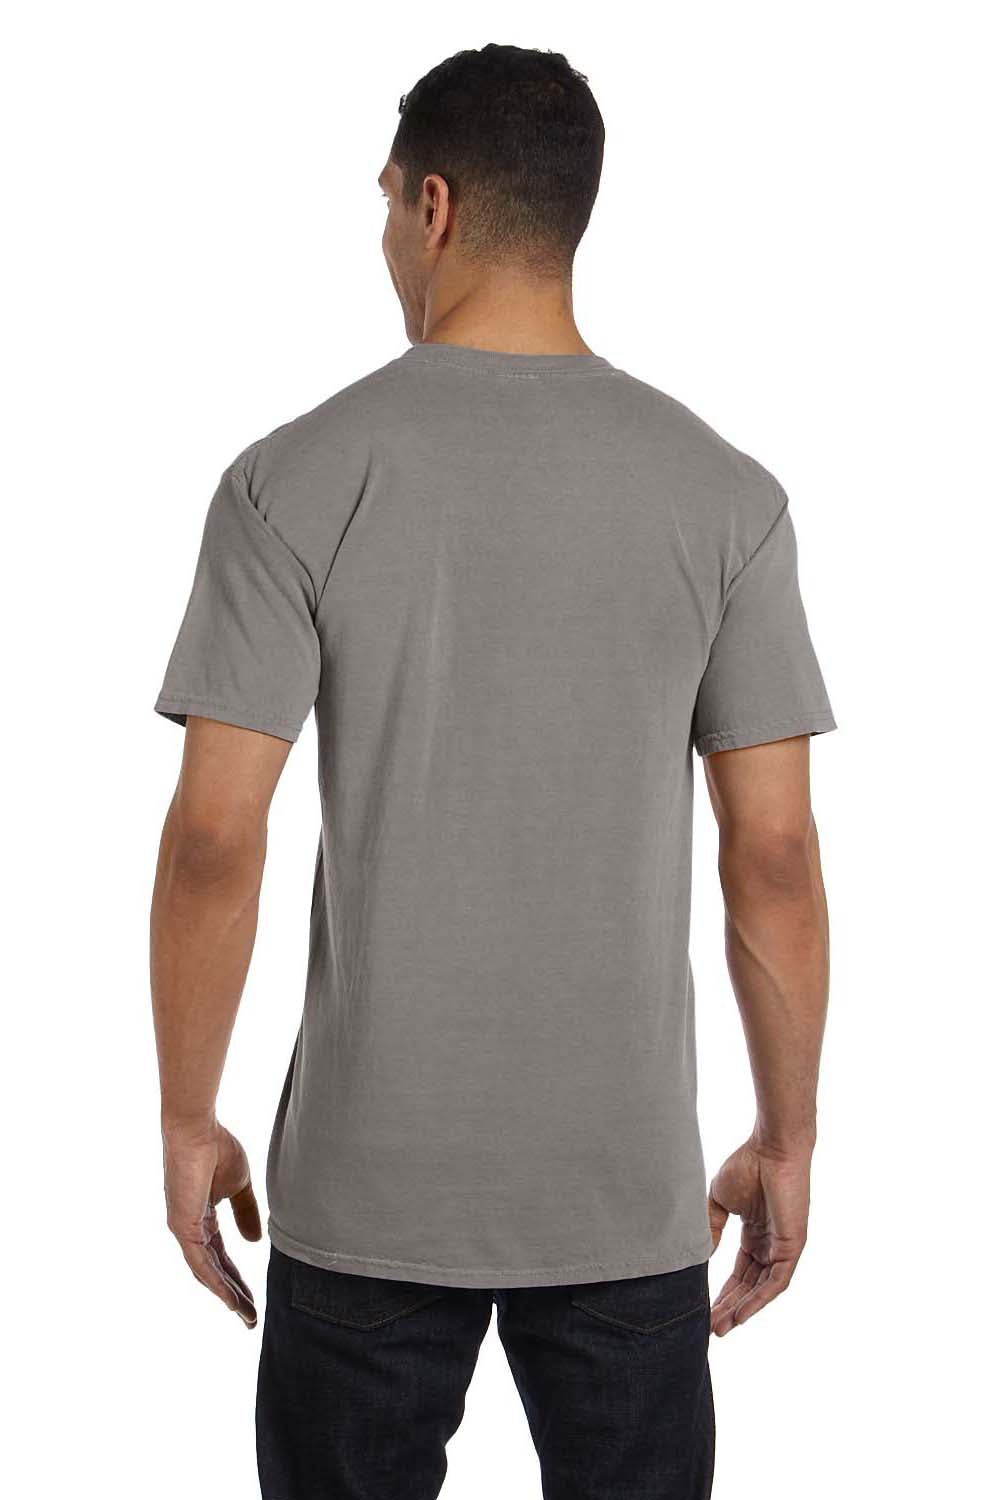 Comfort Colors 6030CC Mens Short Sleeve Crewneck T-Shirt w/ Pocket Grey Back